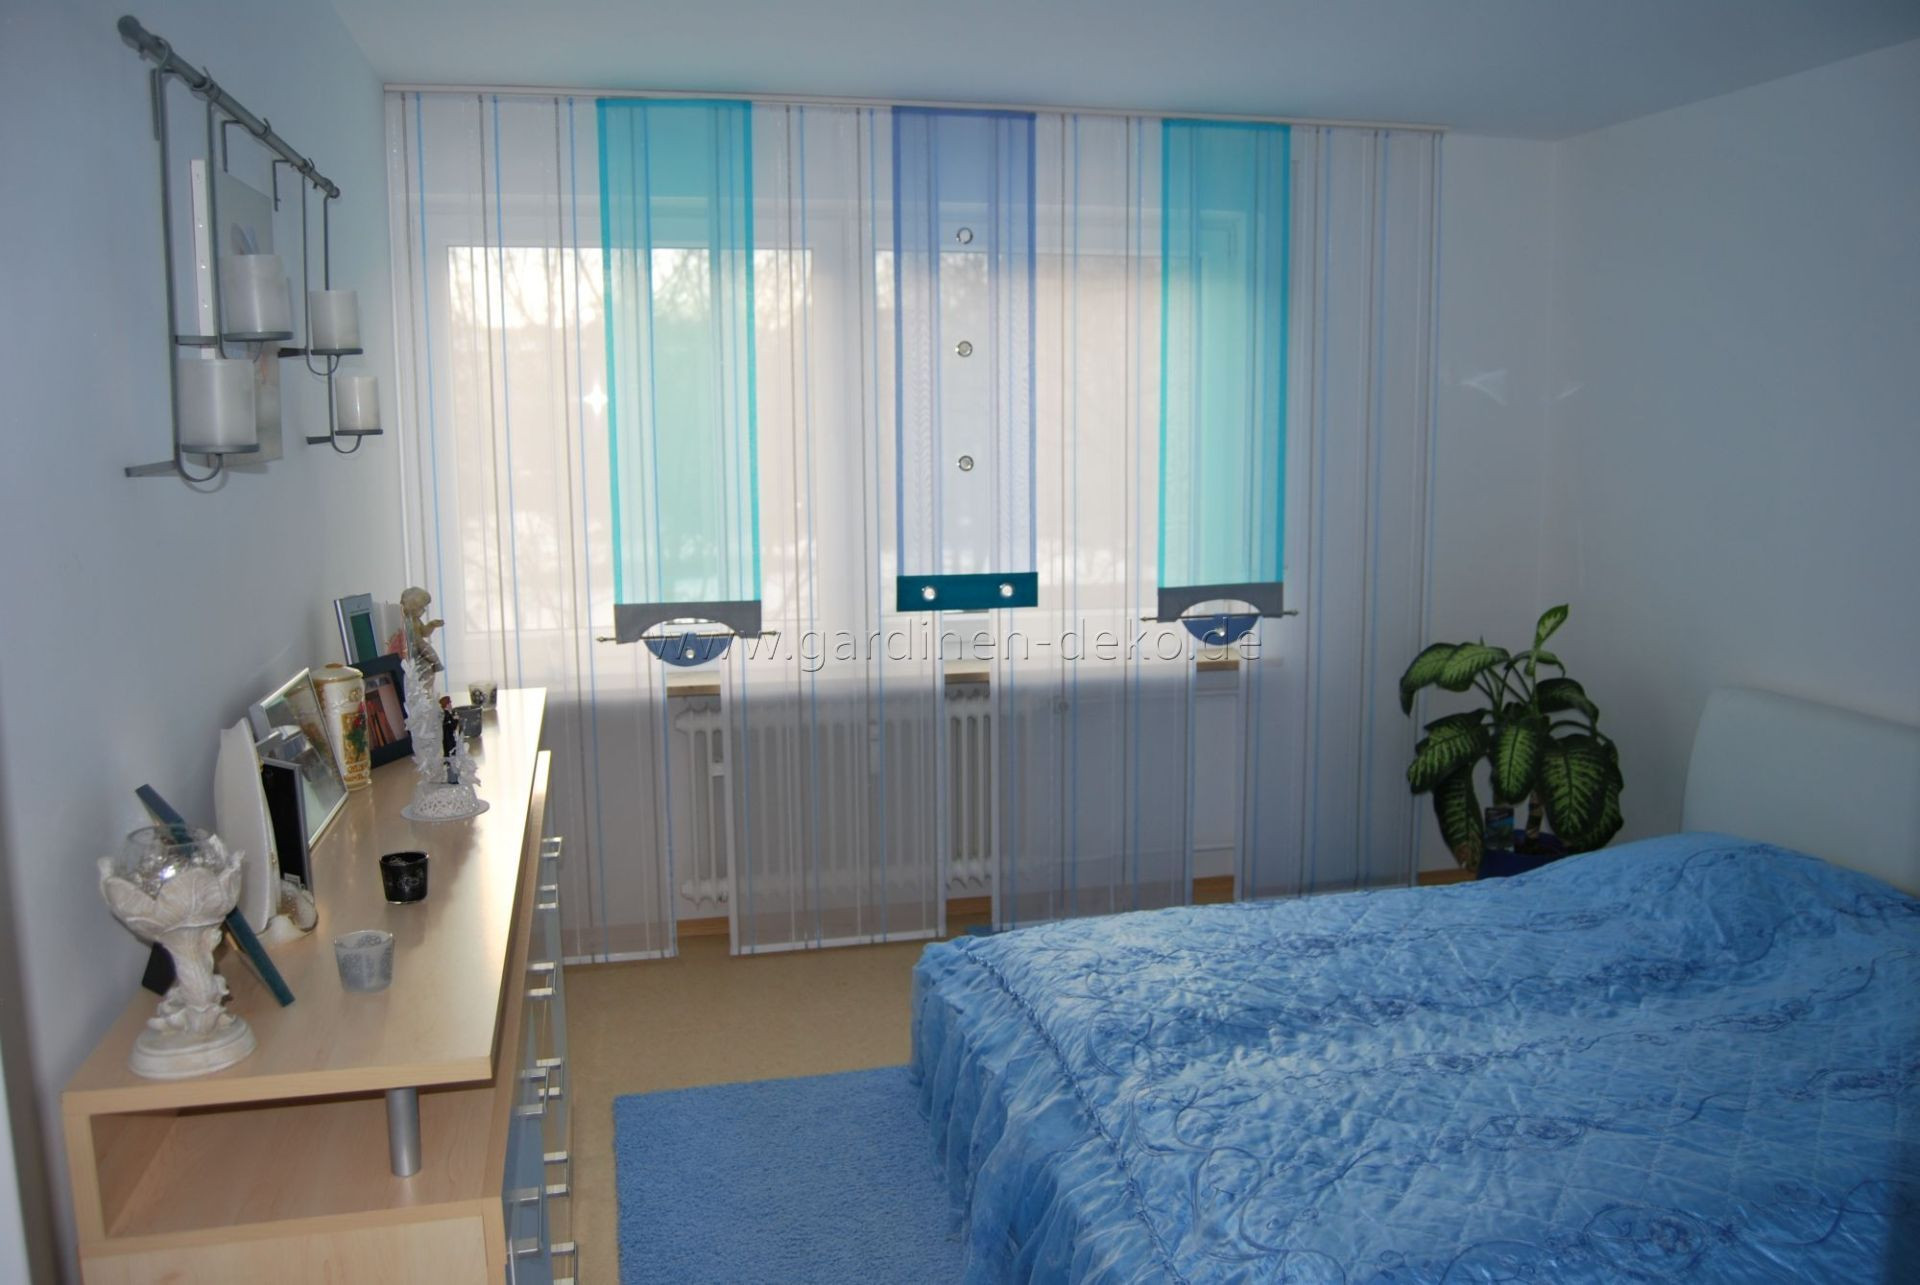 Gardinen Schlafzimmer
 Helle Schlafzimmer Schiebegardine in blau und türkis